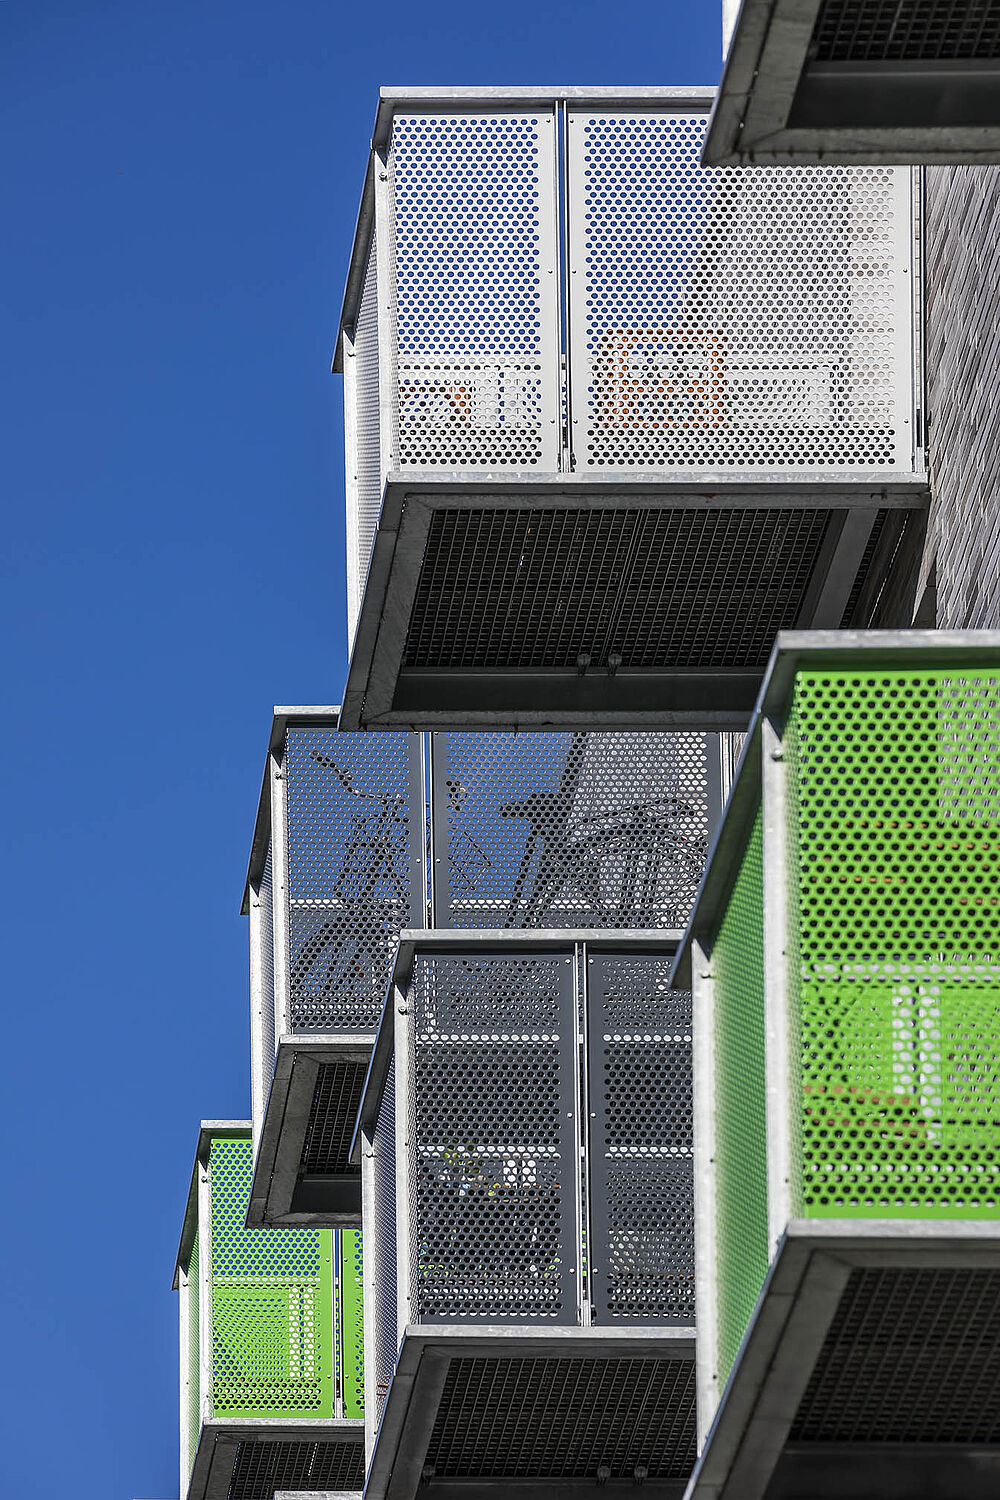 Neubau von 111 Mikroapartments durch die Düsseldorfer Architekten greeen! architects in der Merziger Straße in Düsseldorf